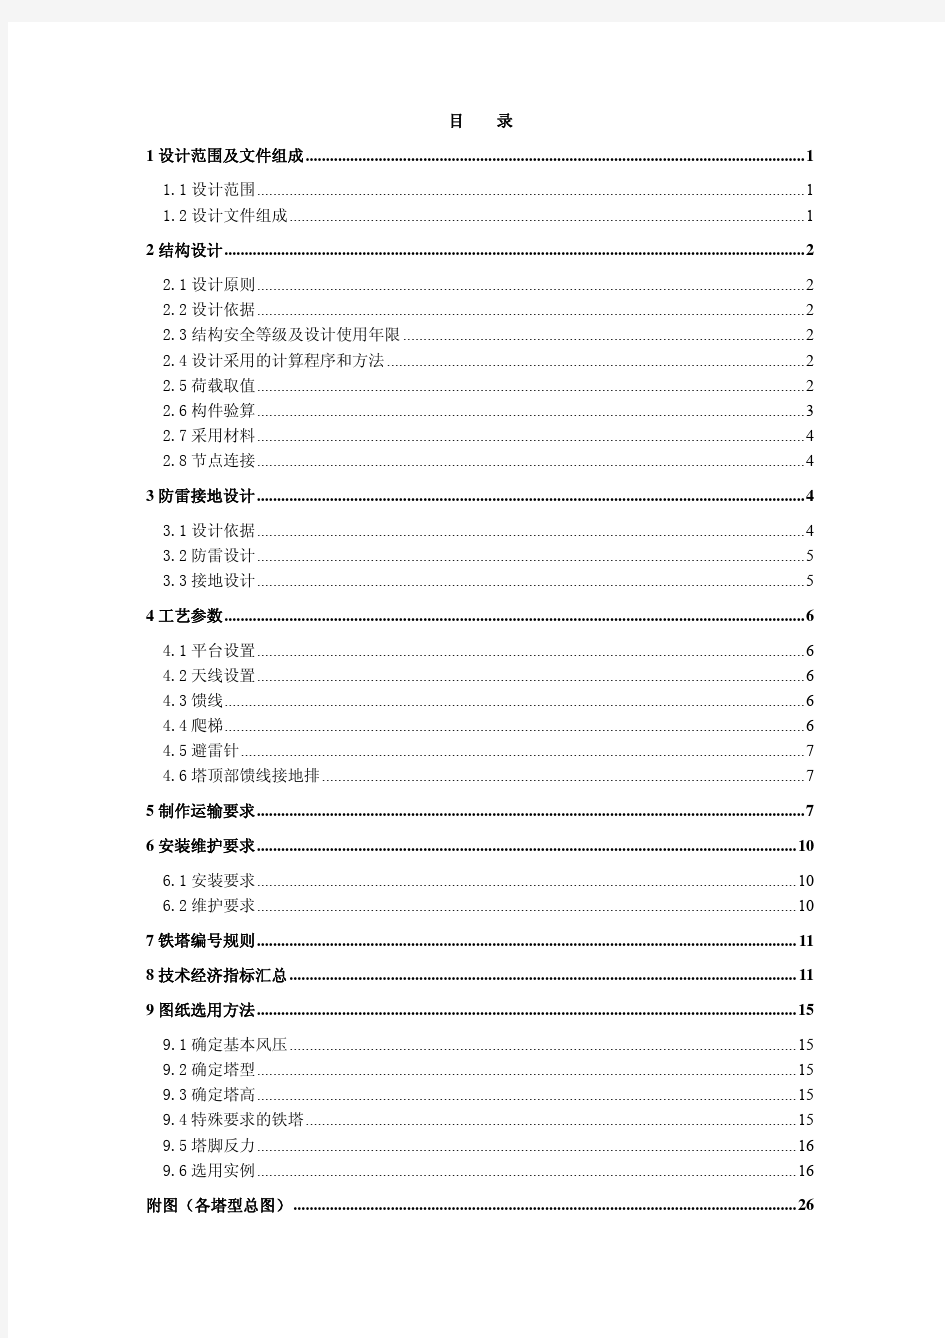 中国移动基站铁塔标准化设计V1.0图纸